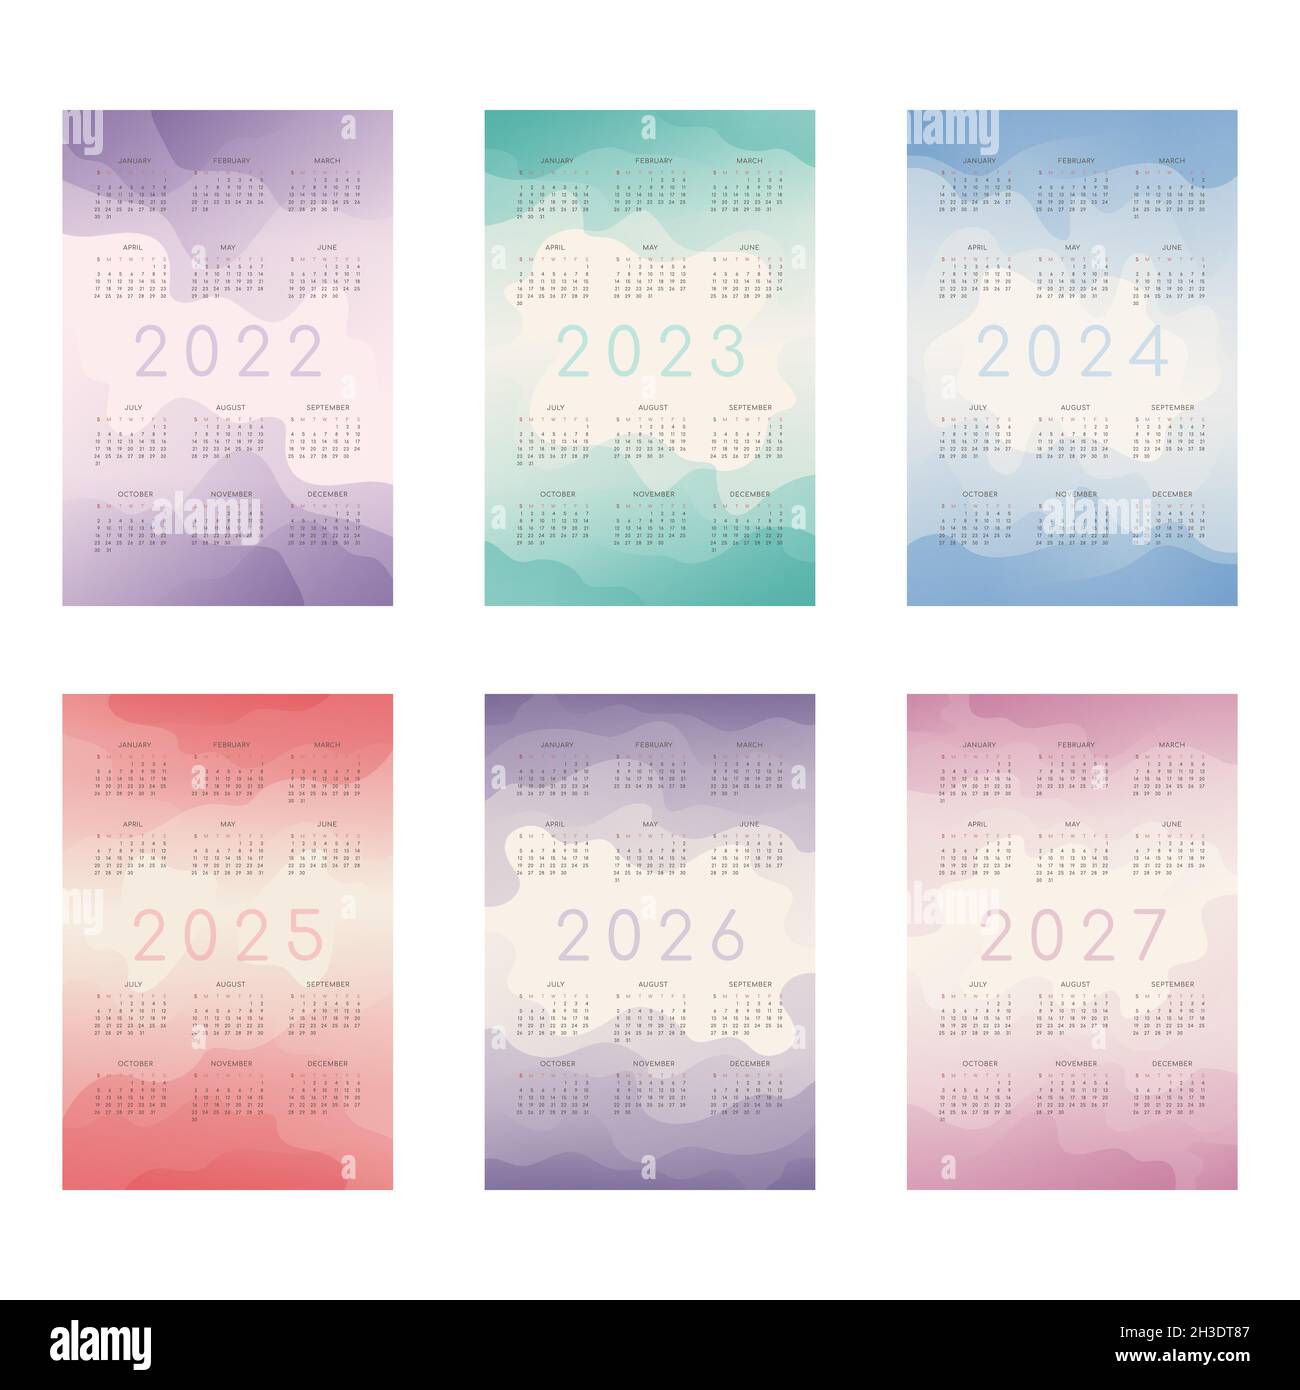 2022 2023 2024 2025 2026 2027 calendar with multicilor translucent